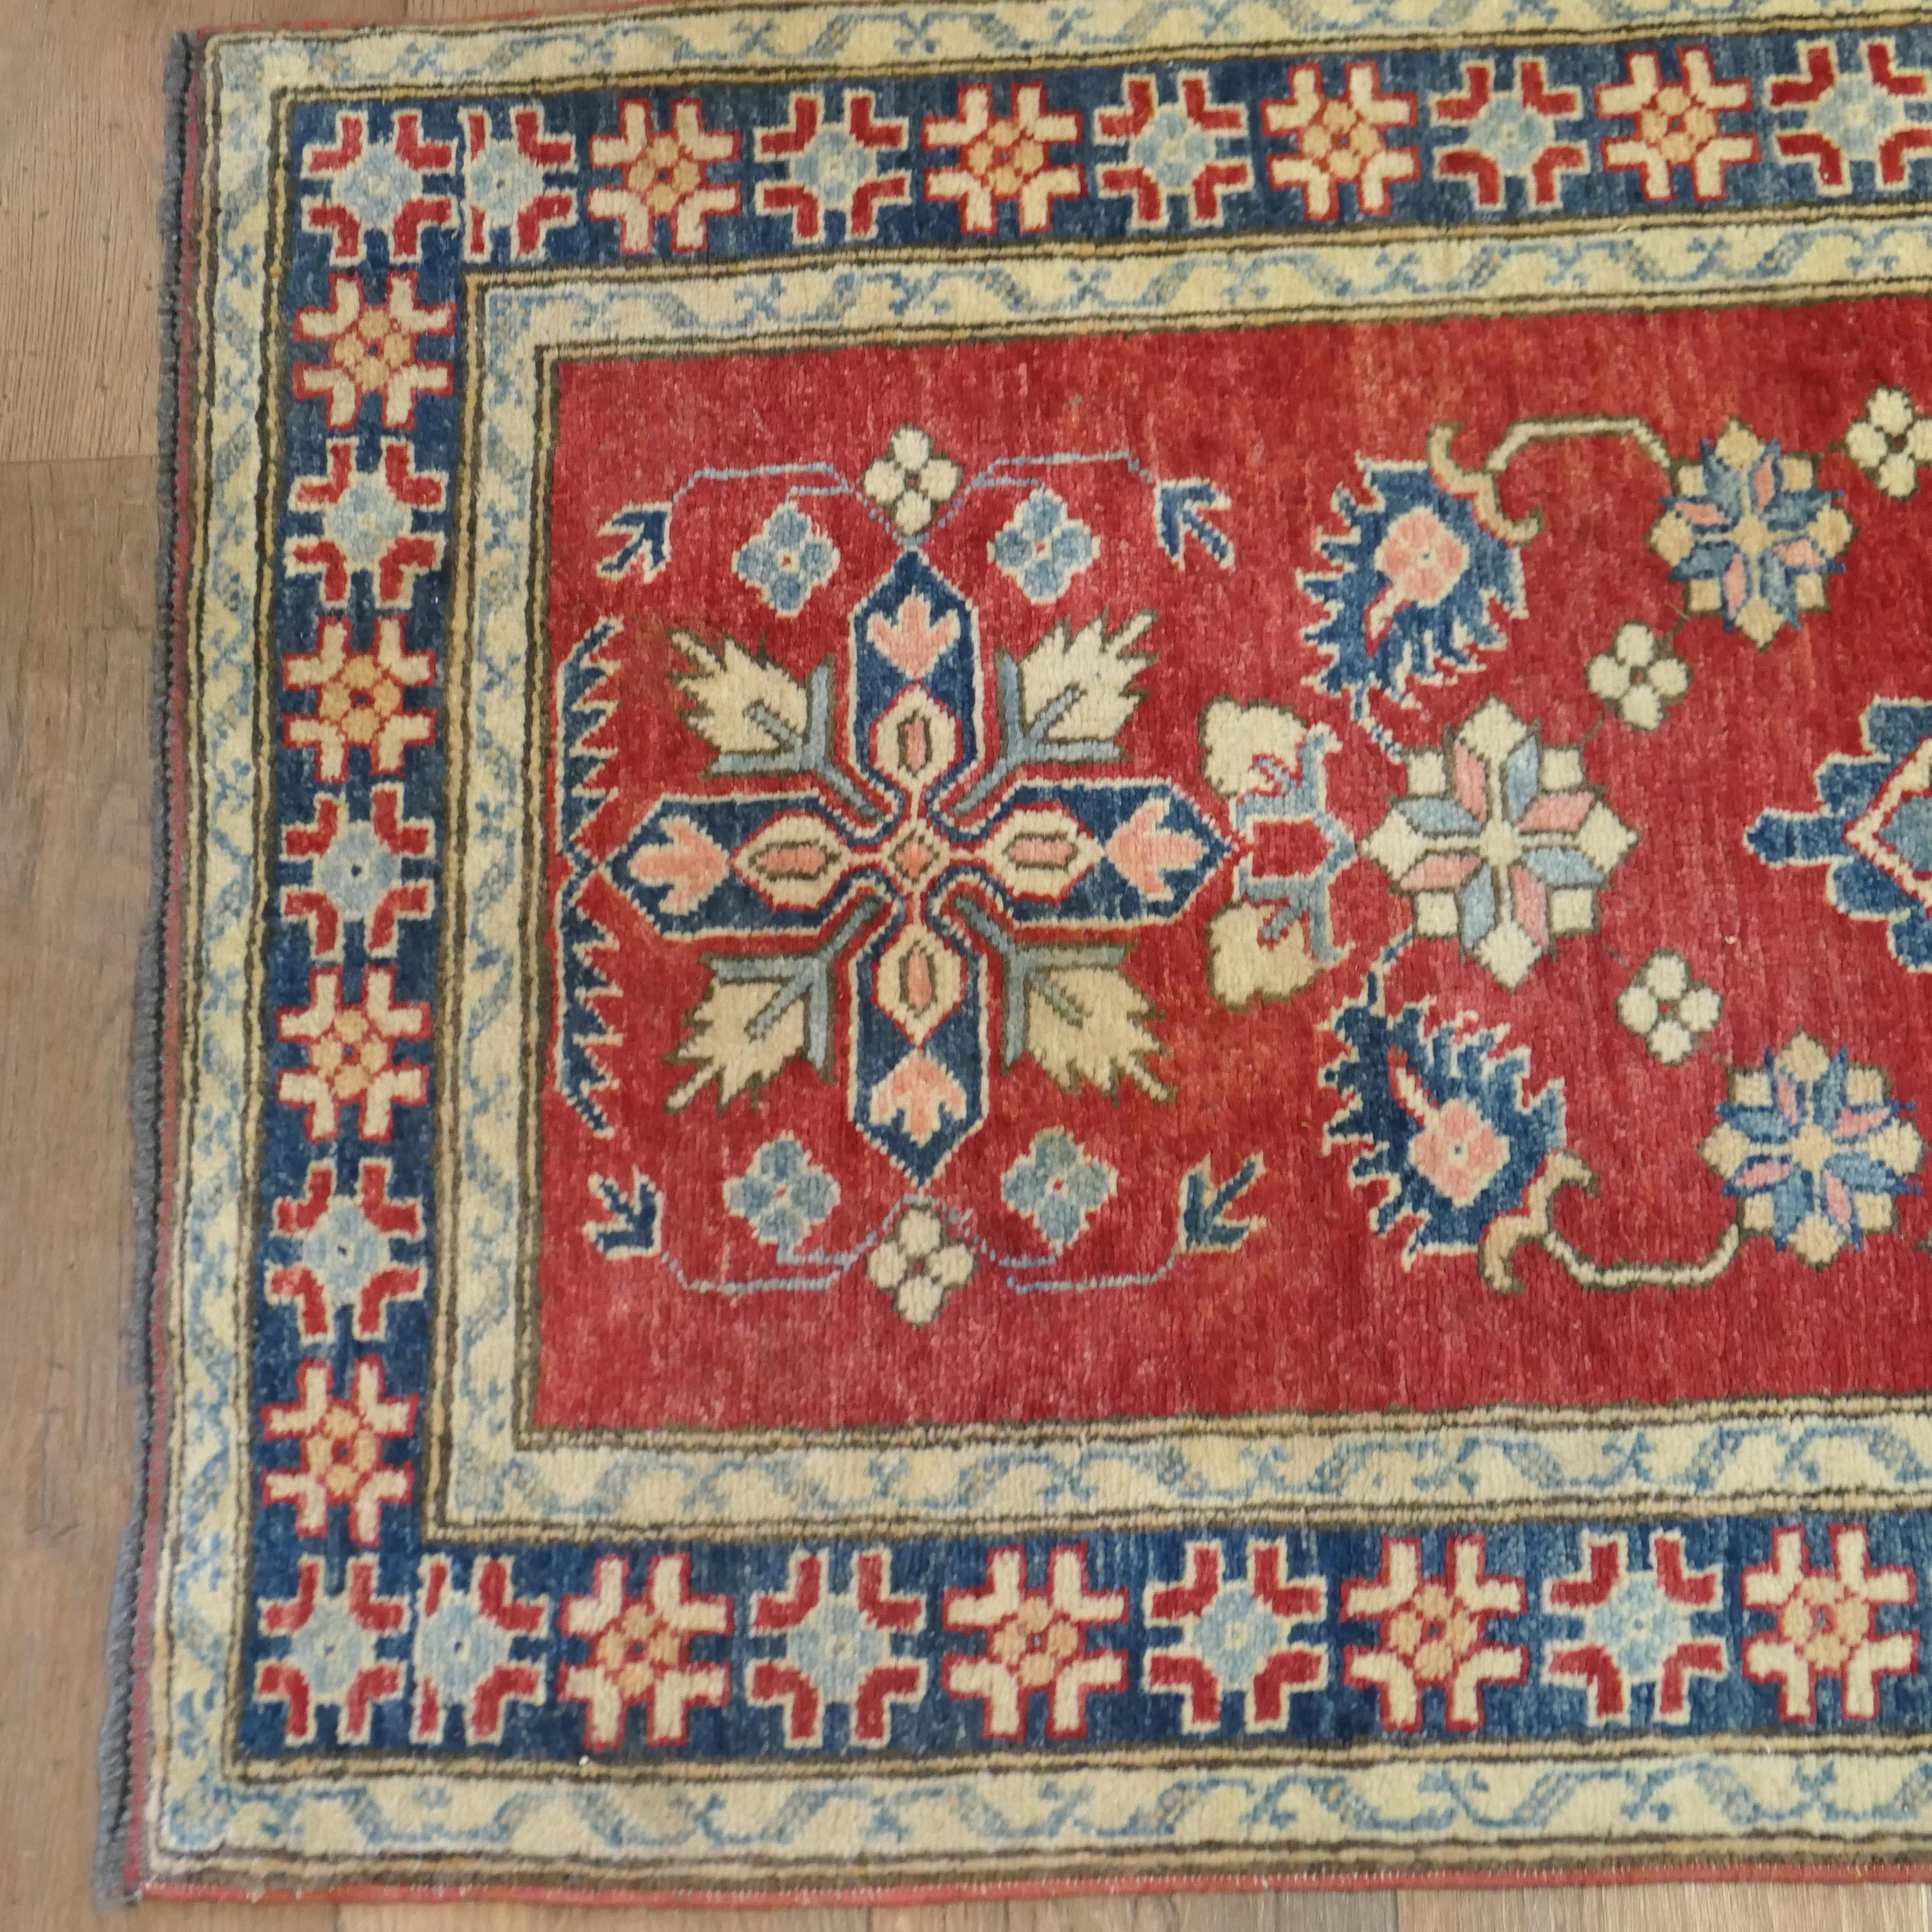 Kazak Handgewebter 12ft-Teppich-Läufer in traditionellem Design

Ein prächtig aussehendes Stück aus dem frühen 20. Jahrhundert mit einer schönen Farbpalette aus leuchtendem Rot und blauen Schattierungen.  
Der Woll-Läufer hat ein zentrales